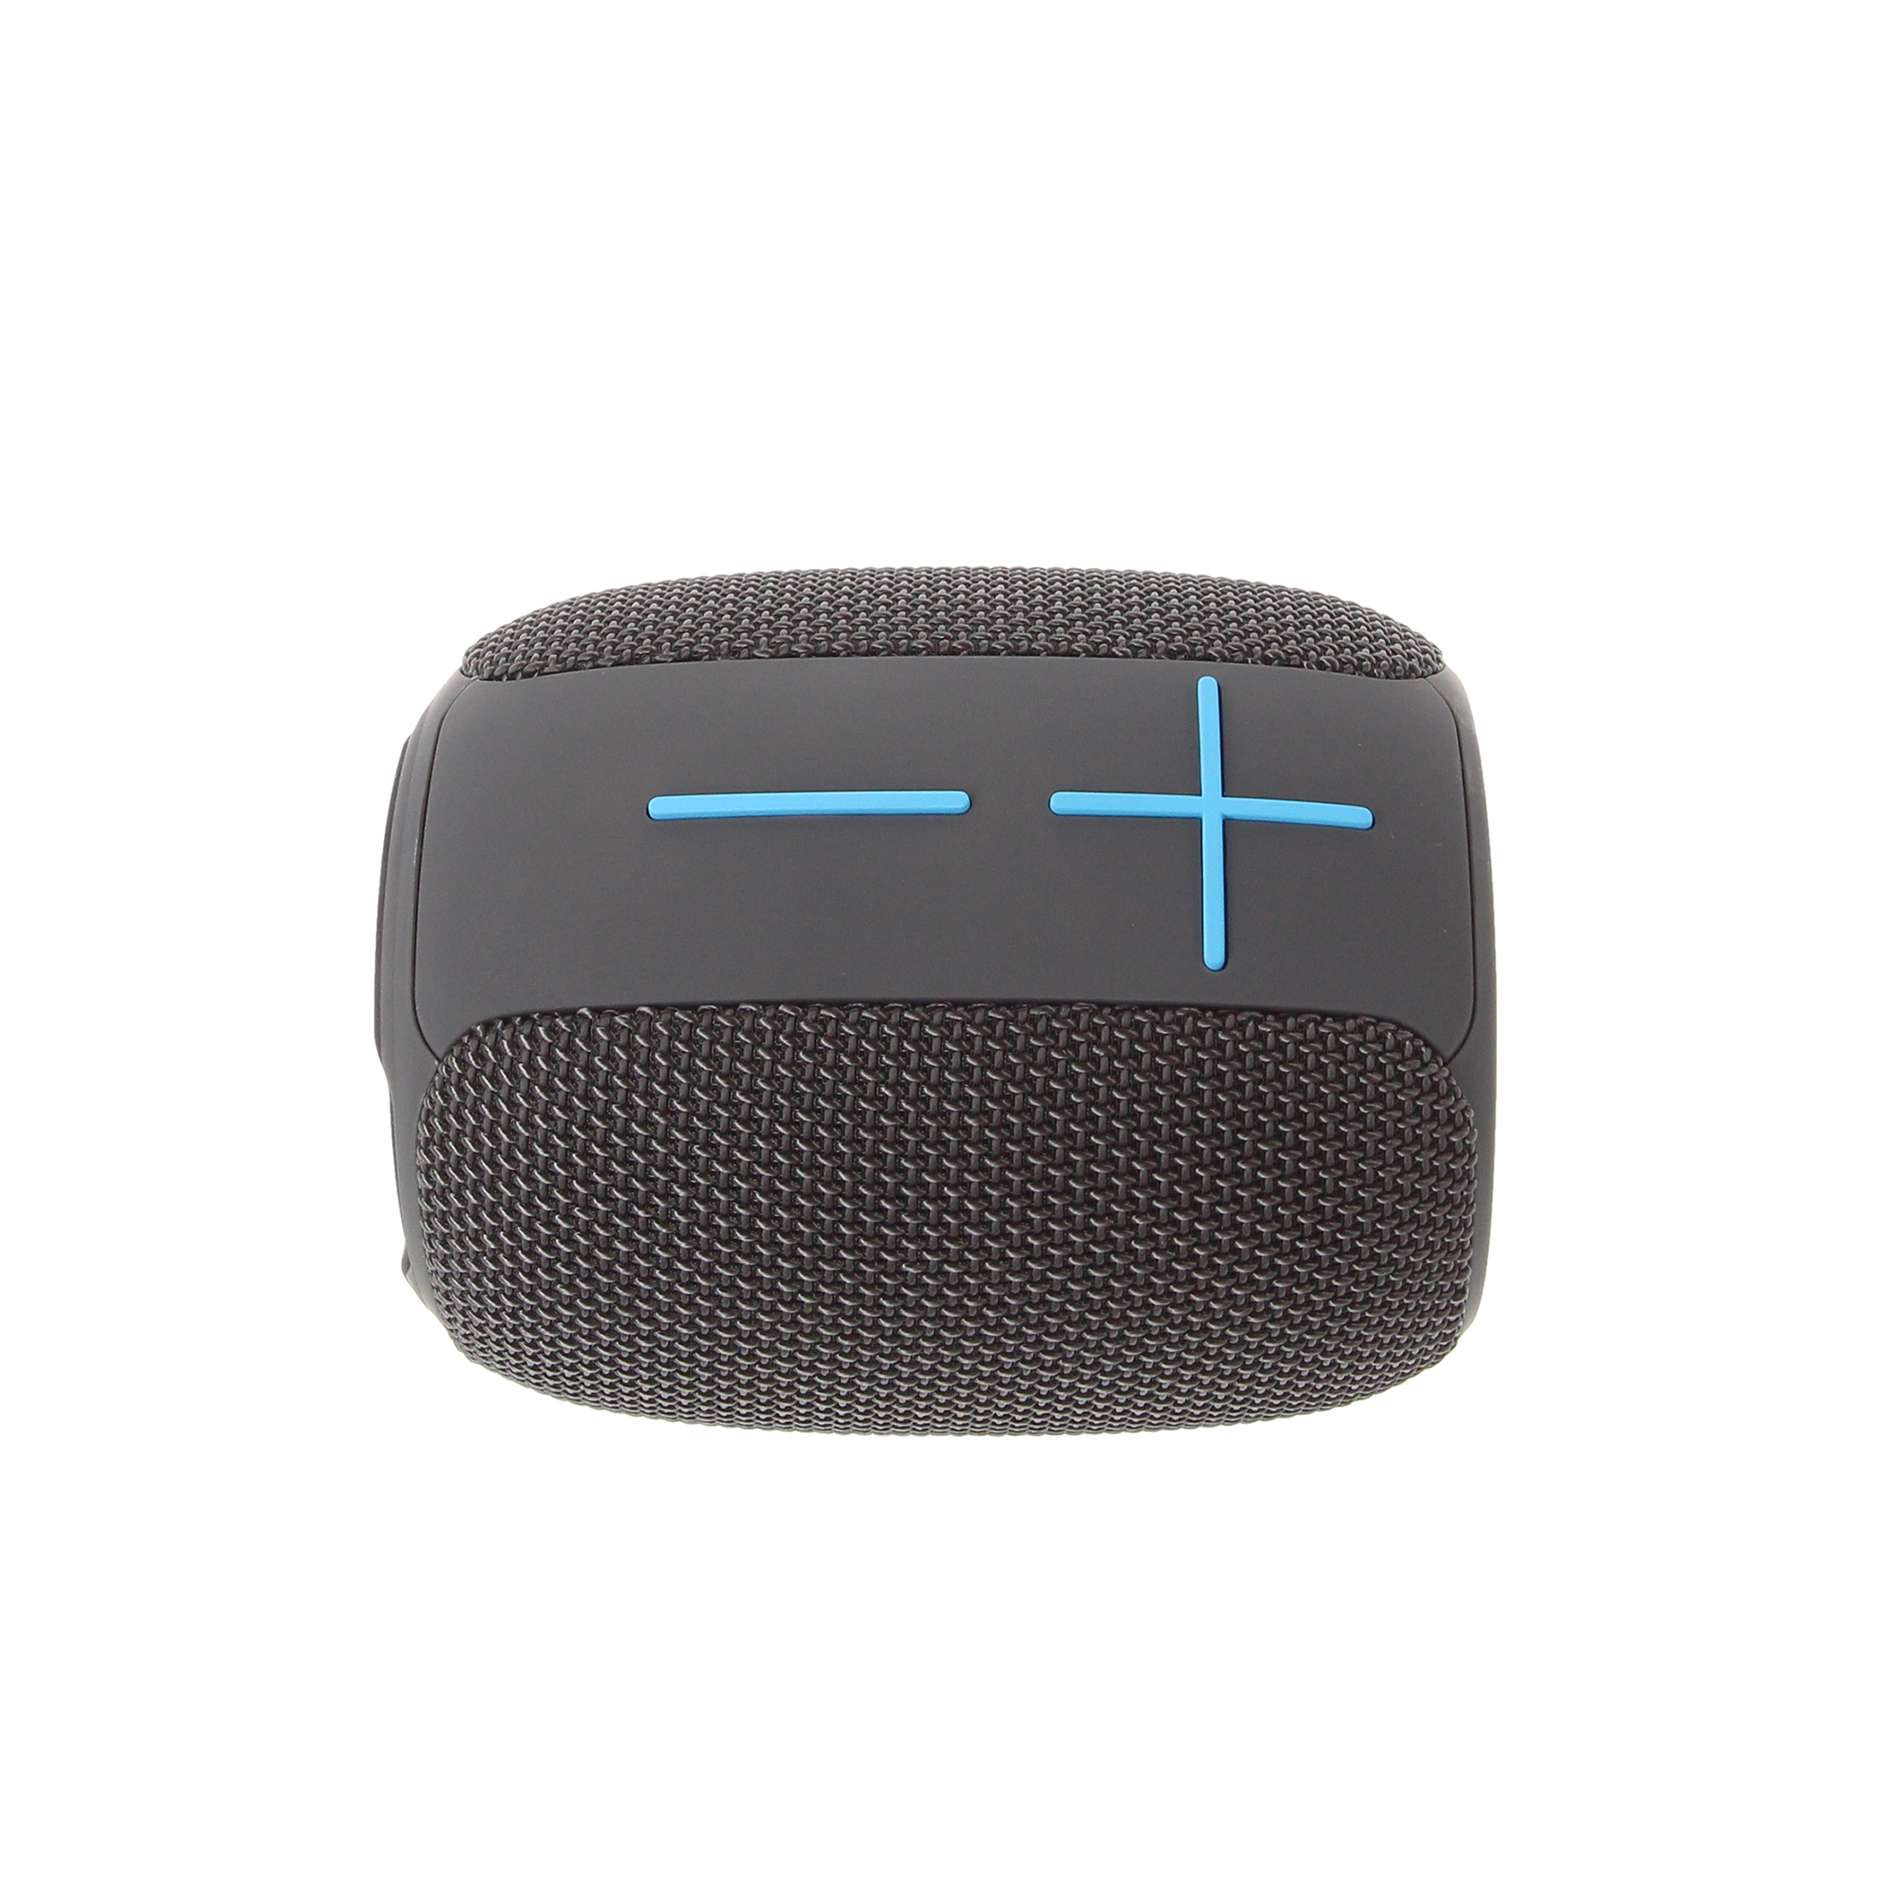 Enceinte Nomade Bluetooth Compacte - Couleur Grise